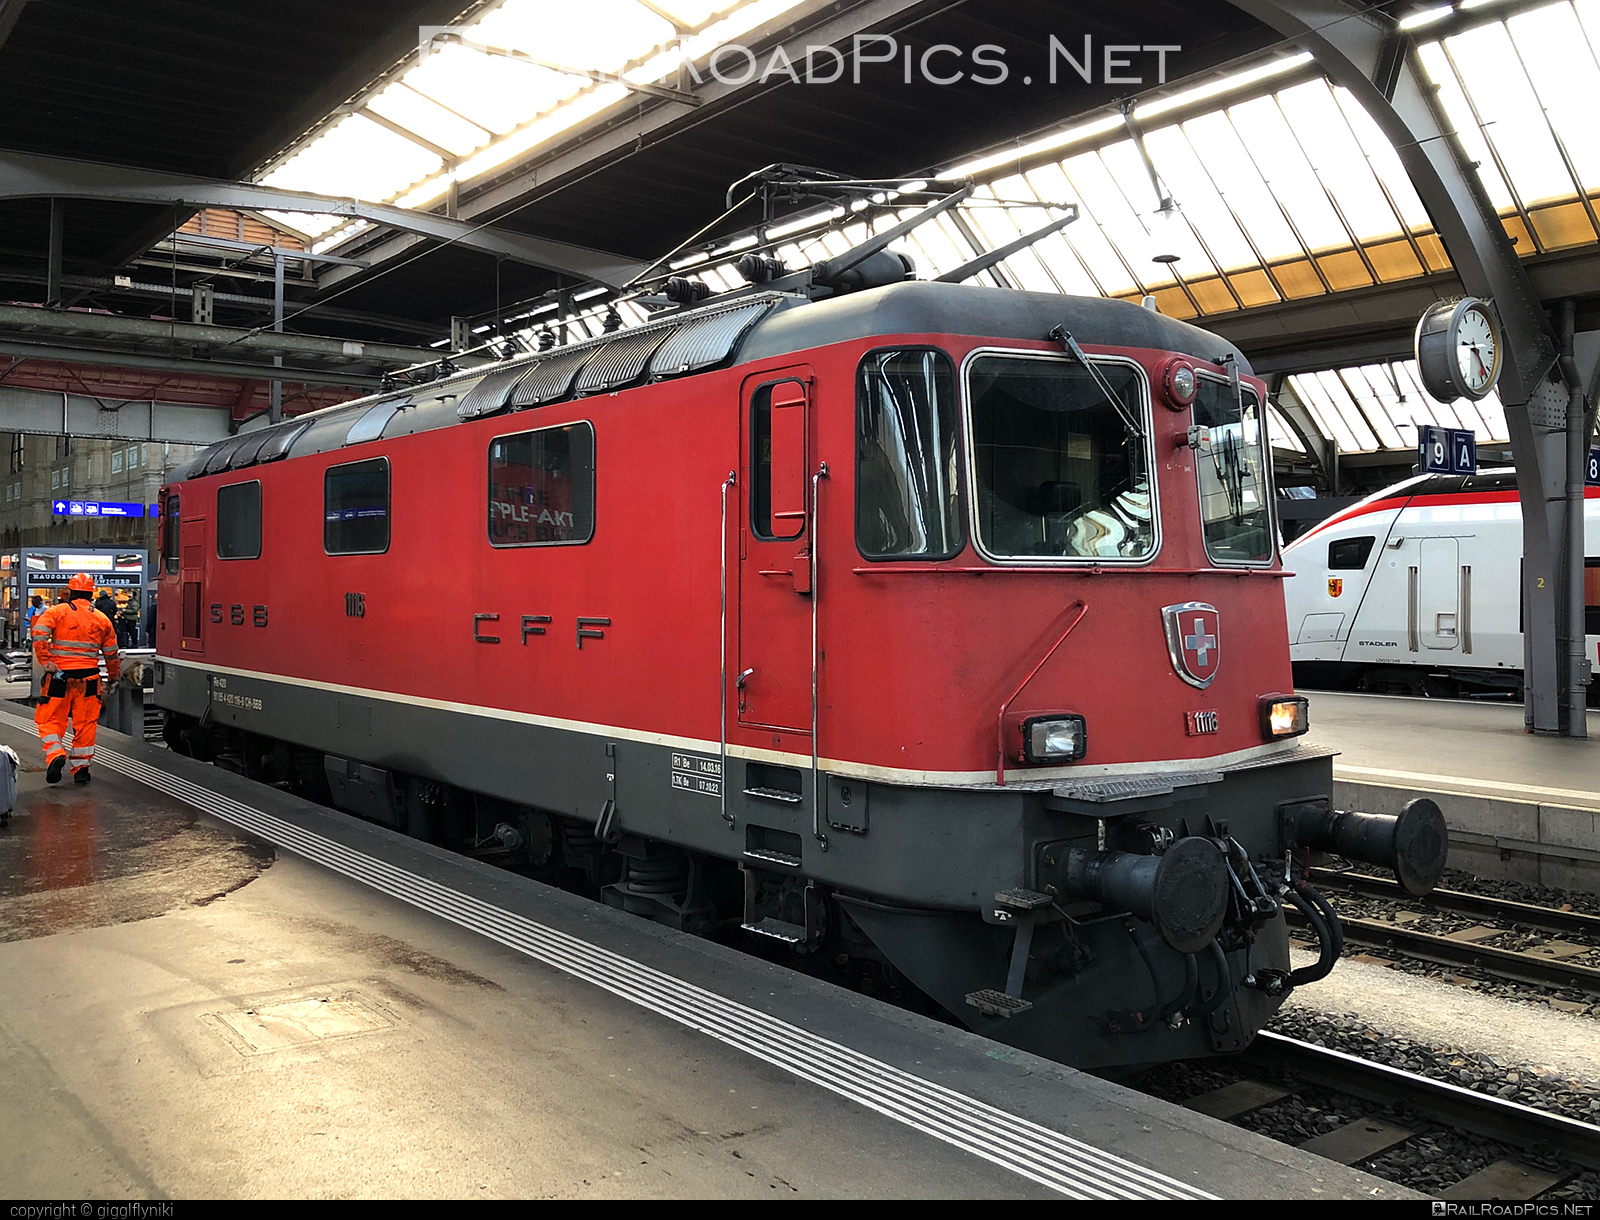 SLM Re 420 - 420 116 operated by Schweizerische Bundesbahnen SBB #CFF #CheminsDeFerFederauxSuisses #FFS #FerrovieFederaliSvizzere #SBB #SchweizerischeBundesbahnen #re420 #re44ii #sbbRe420 #schweizerischelokomotivundmaschinenfabrik #slm #swisslocomotiveandmachineworks